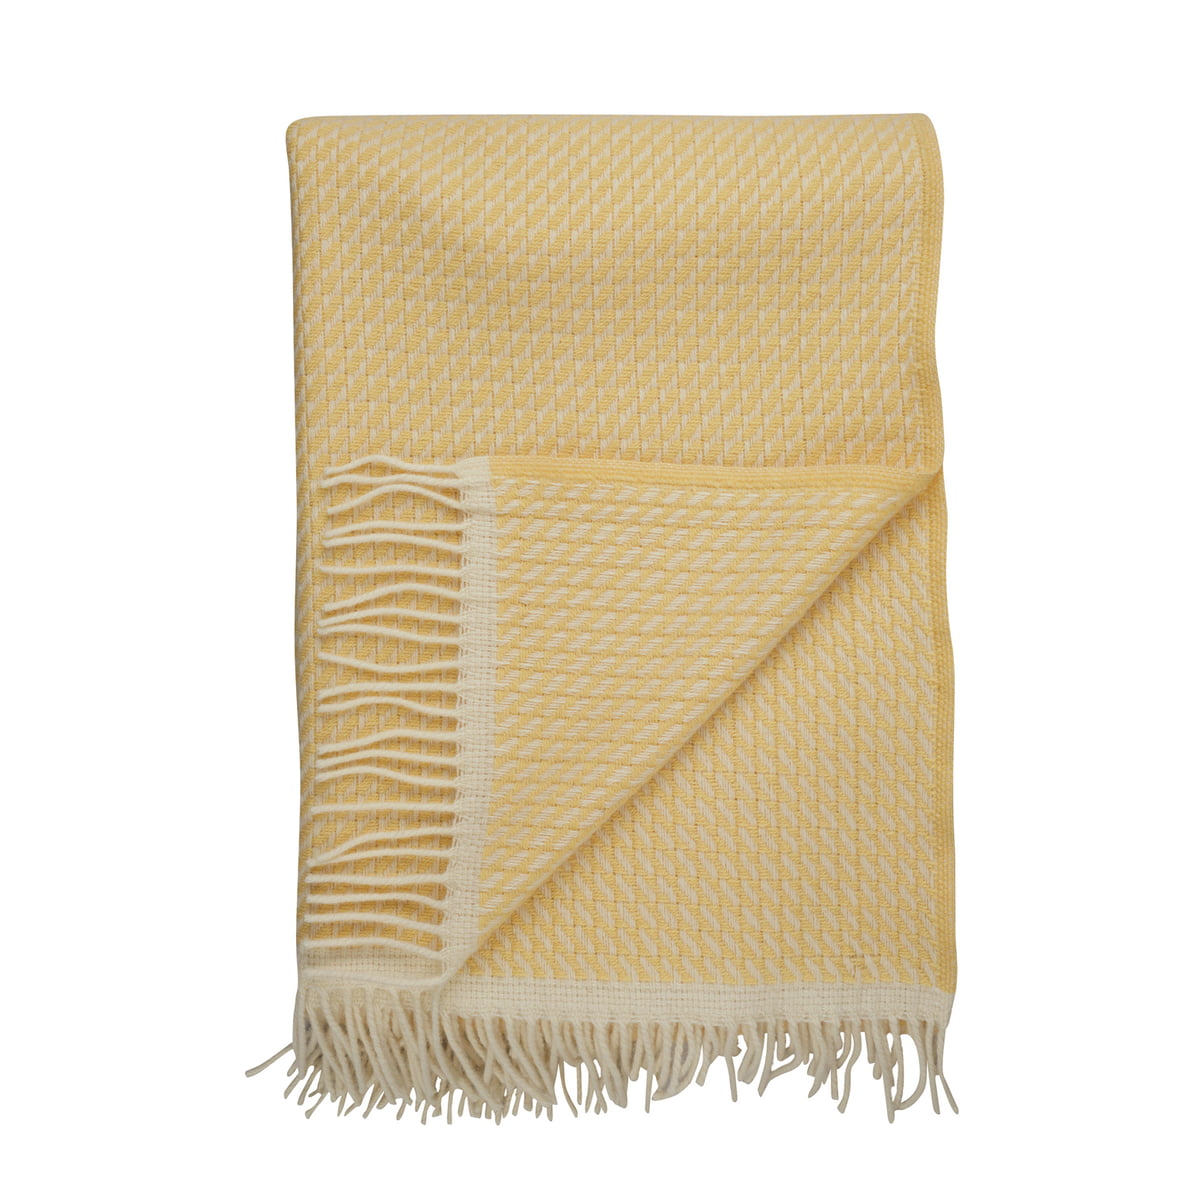 røros tweed - mello couverture de laine, 210 x 150 cm, lemon yellow